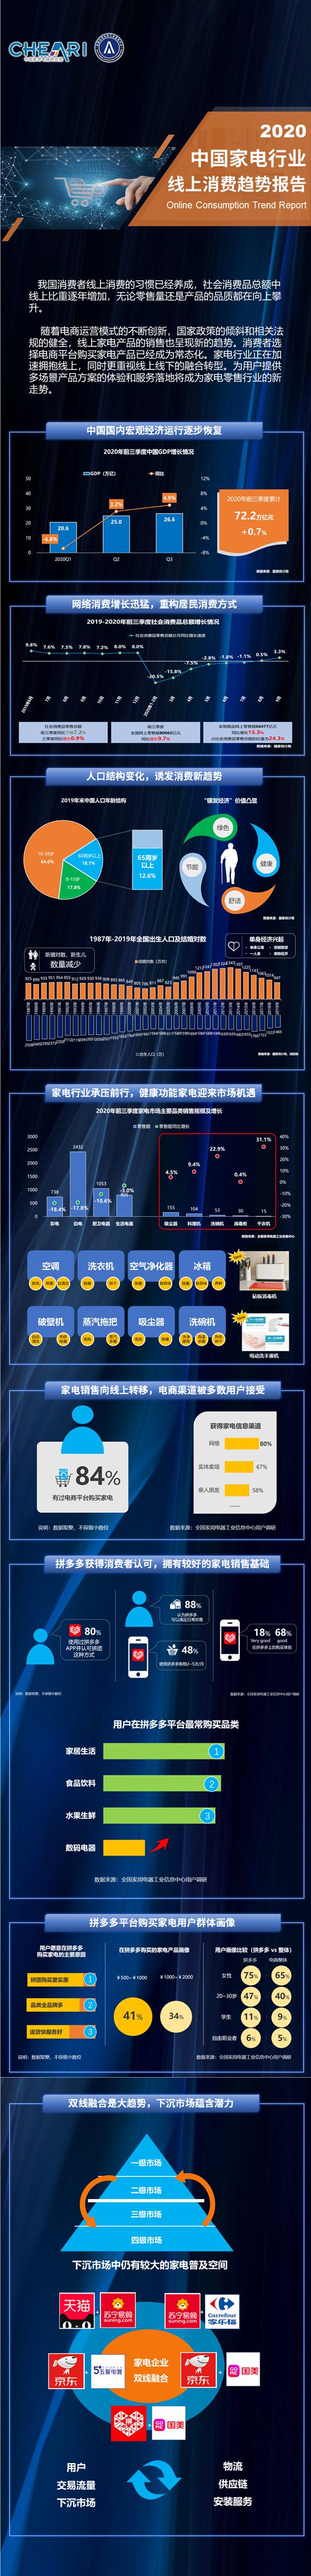 2020年中国家电行业线上消费趋势报告.png